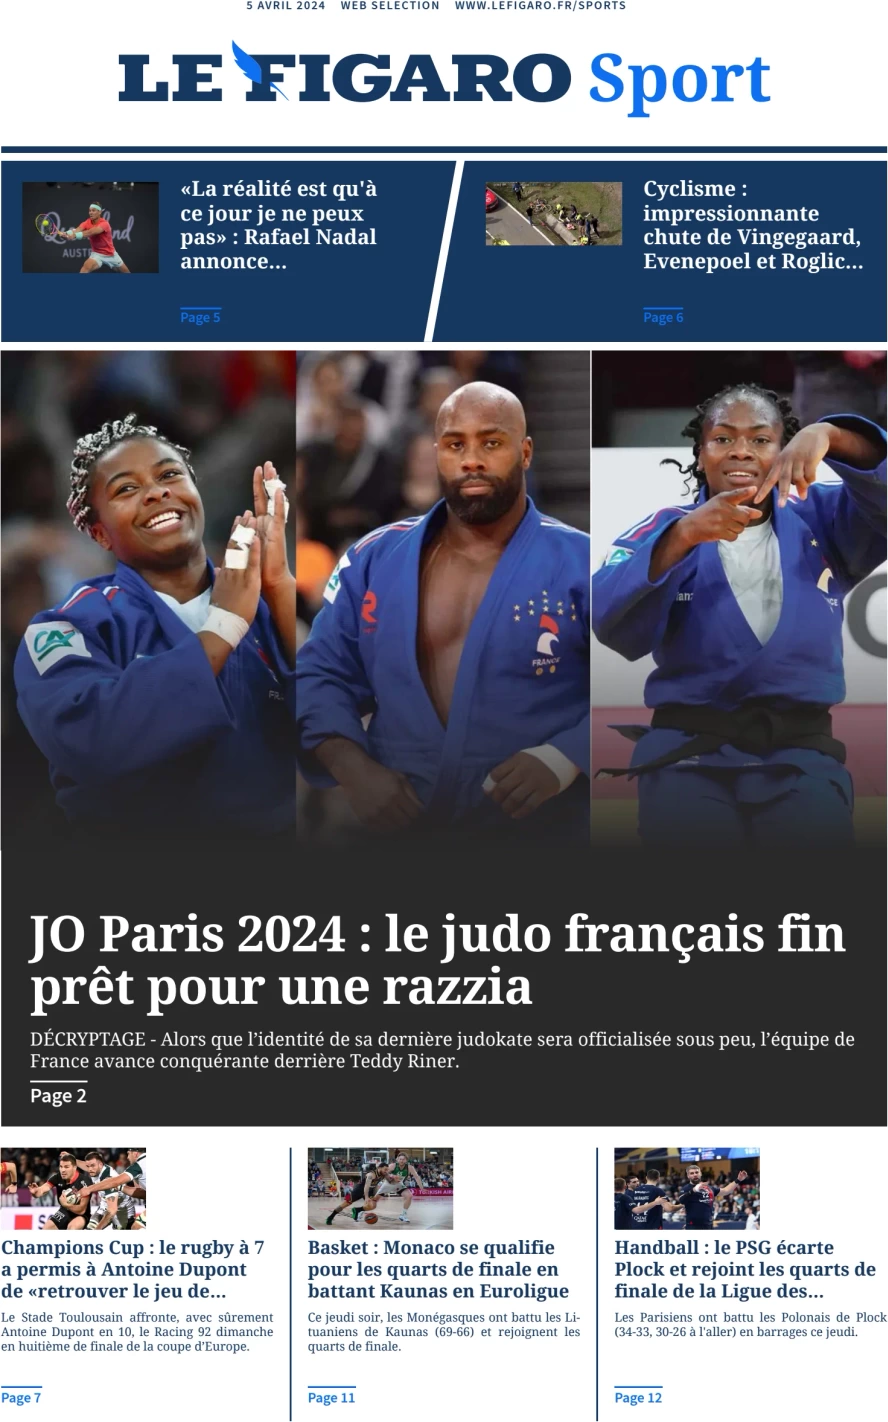 prima pagina - Le Figaro SPORT del 05/04/2024